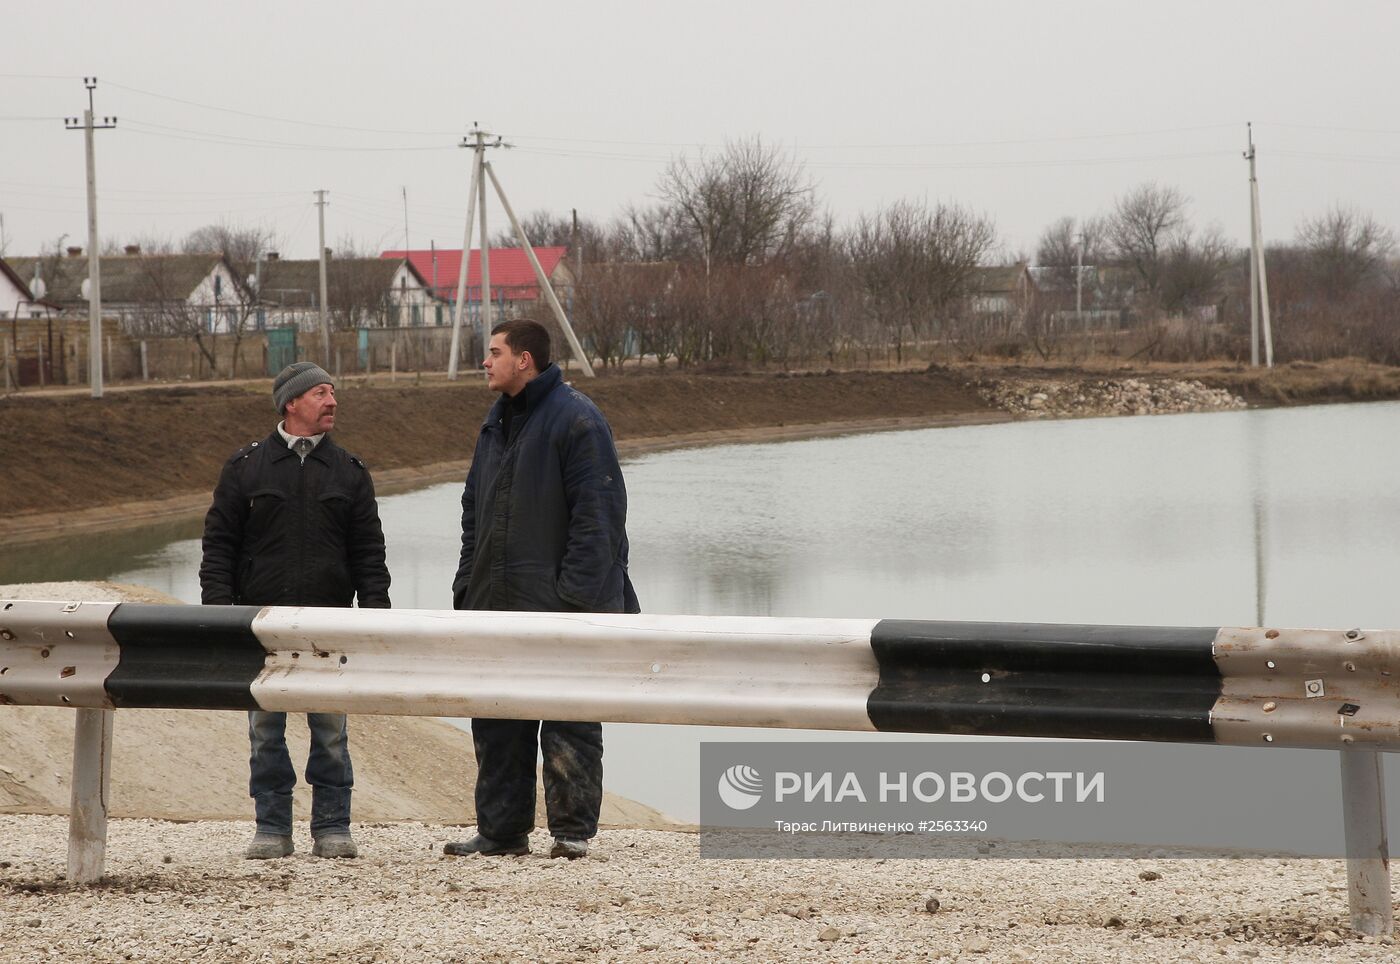 Строительство гидроузла в Крыму